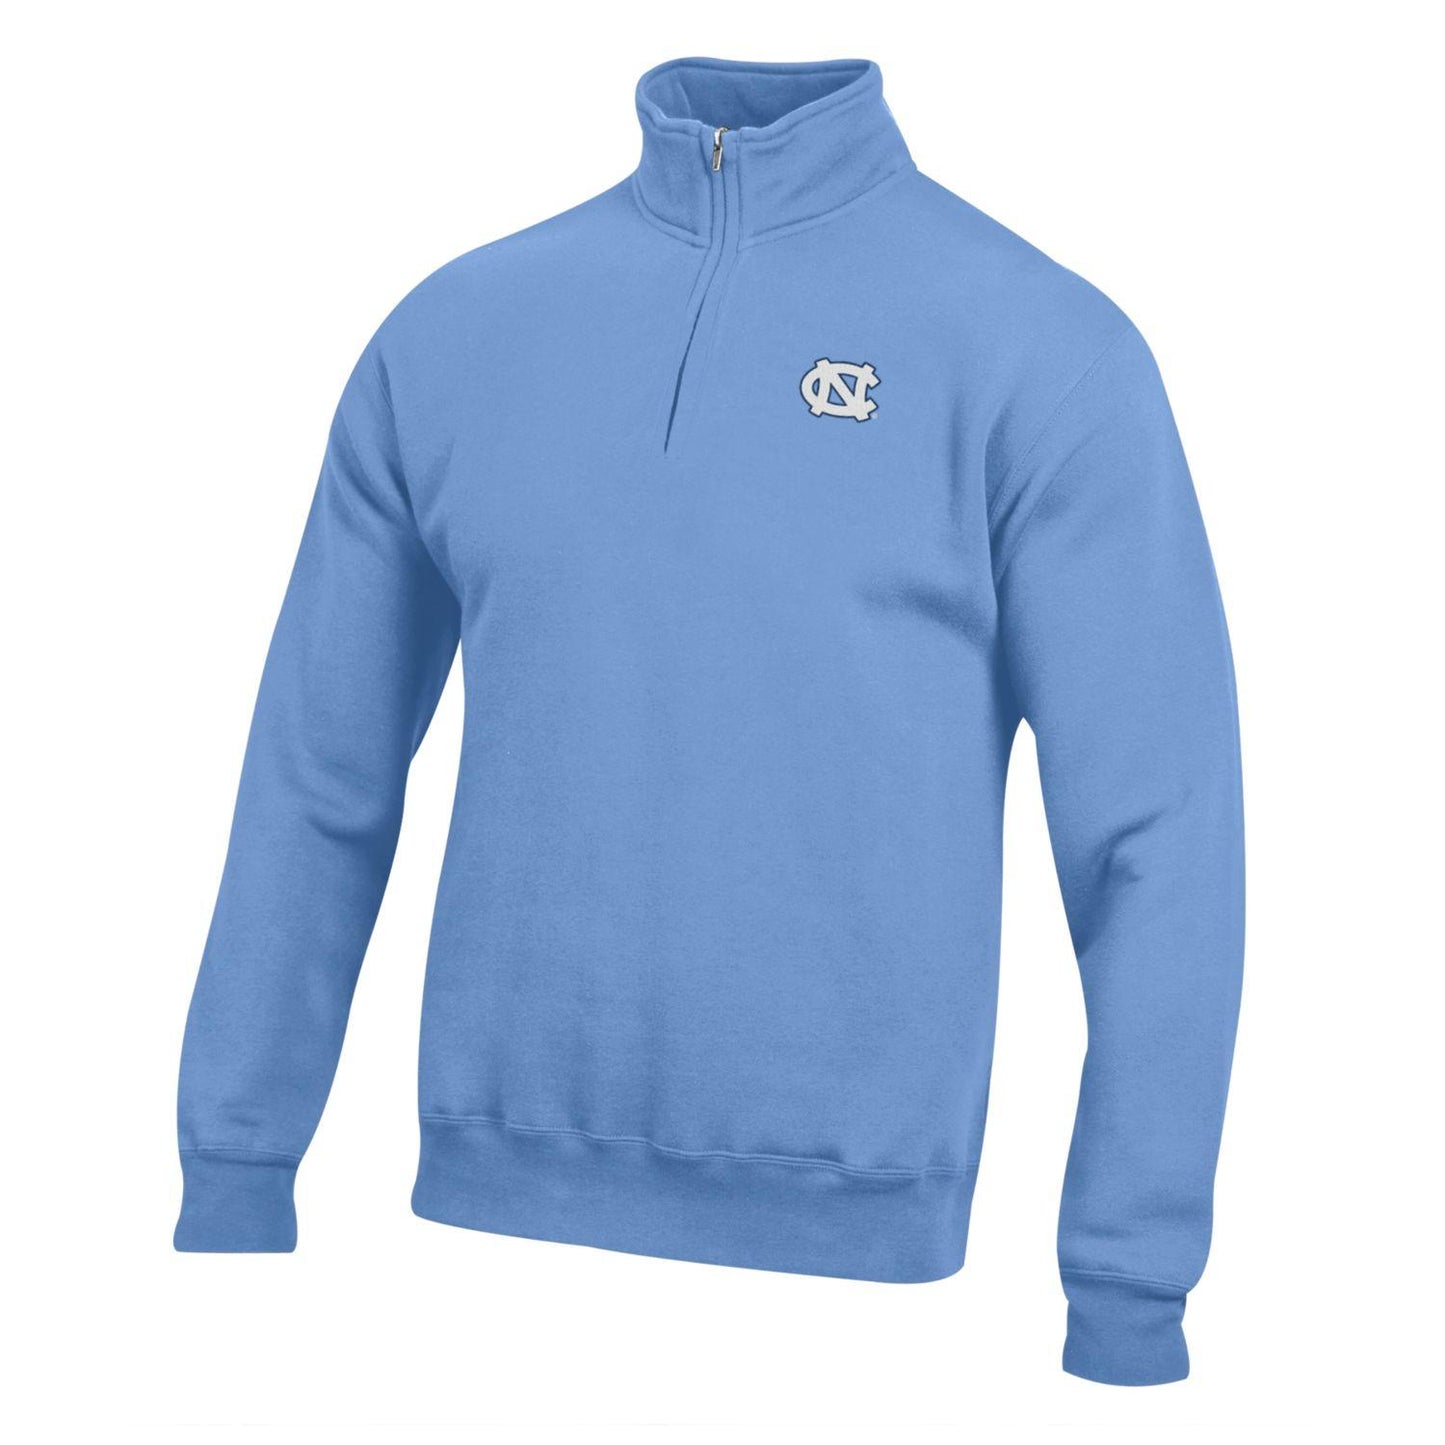 UNC Tar Heels 1/4 Zip Sweatshirt Pullover in Carolina Blue